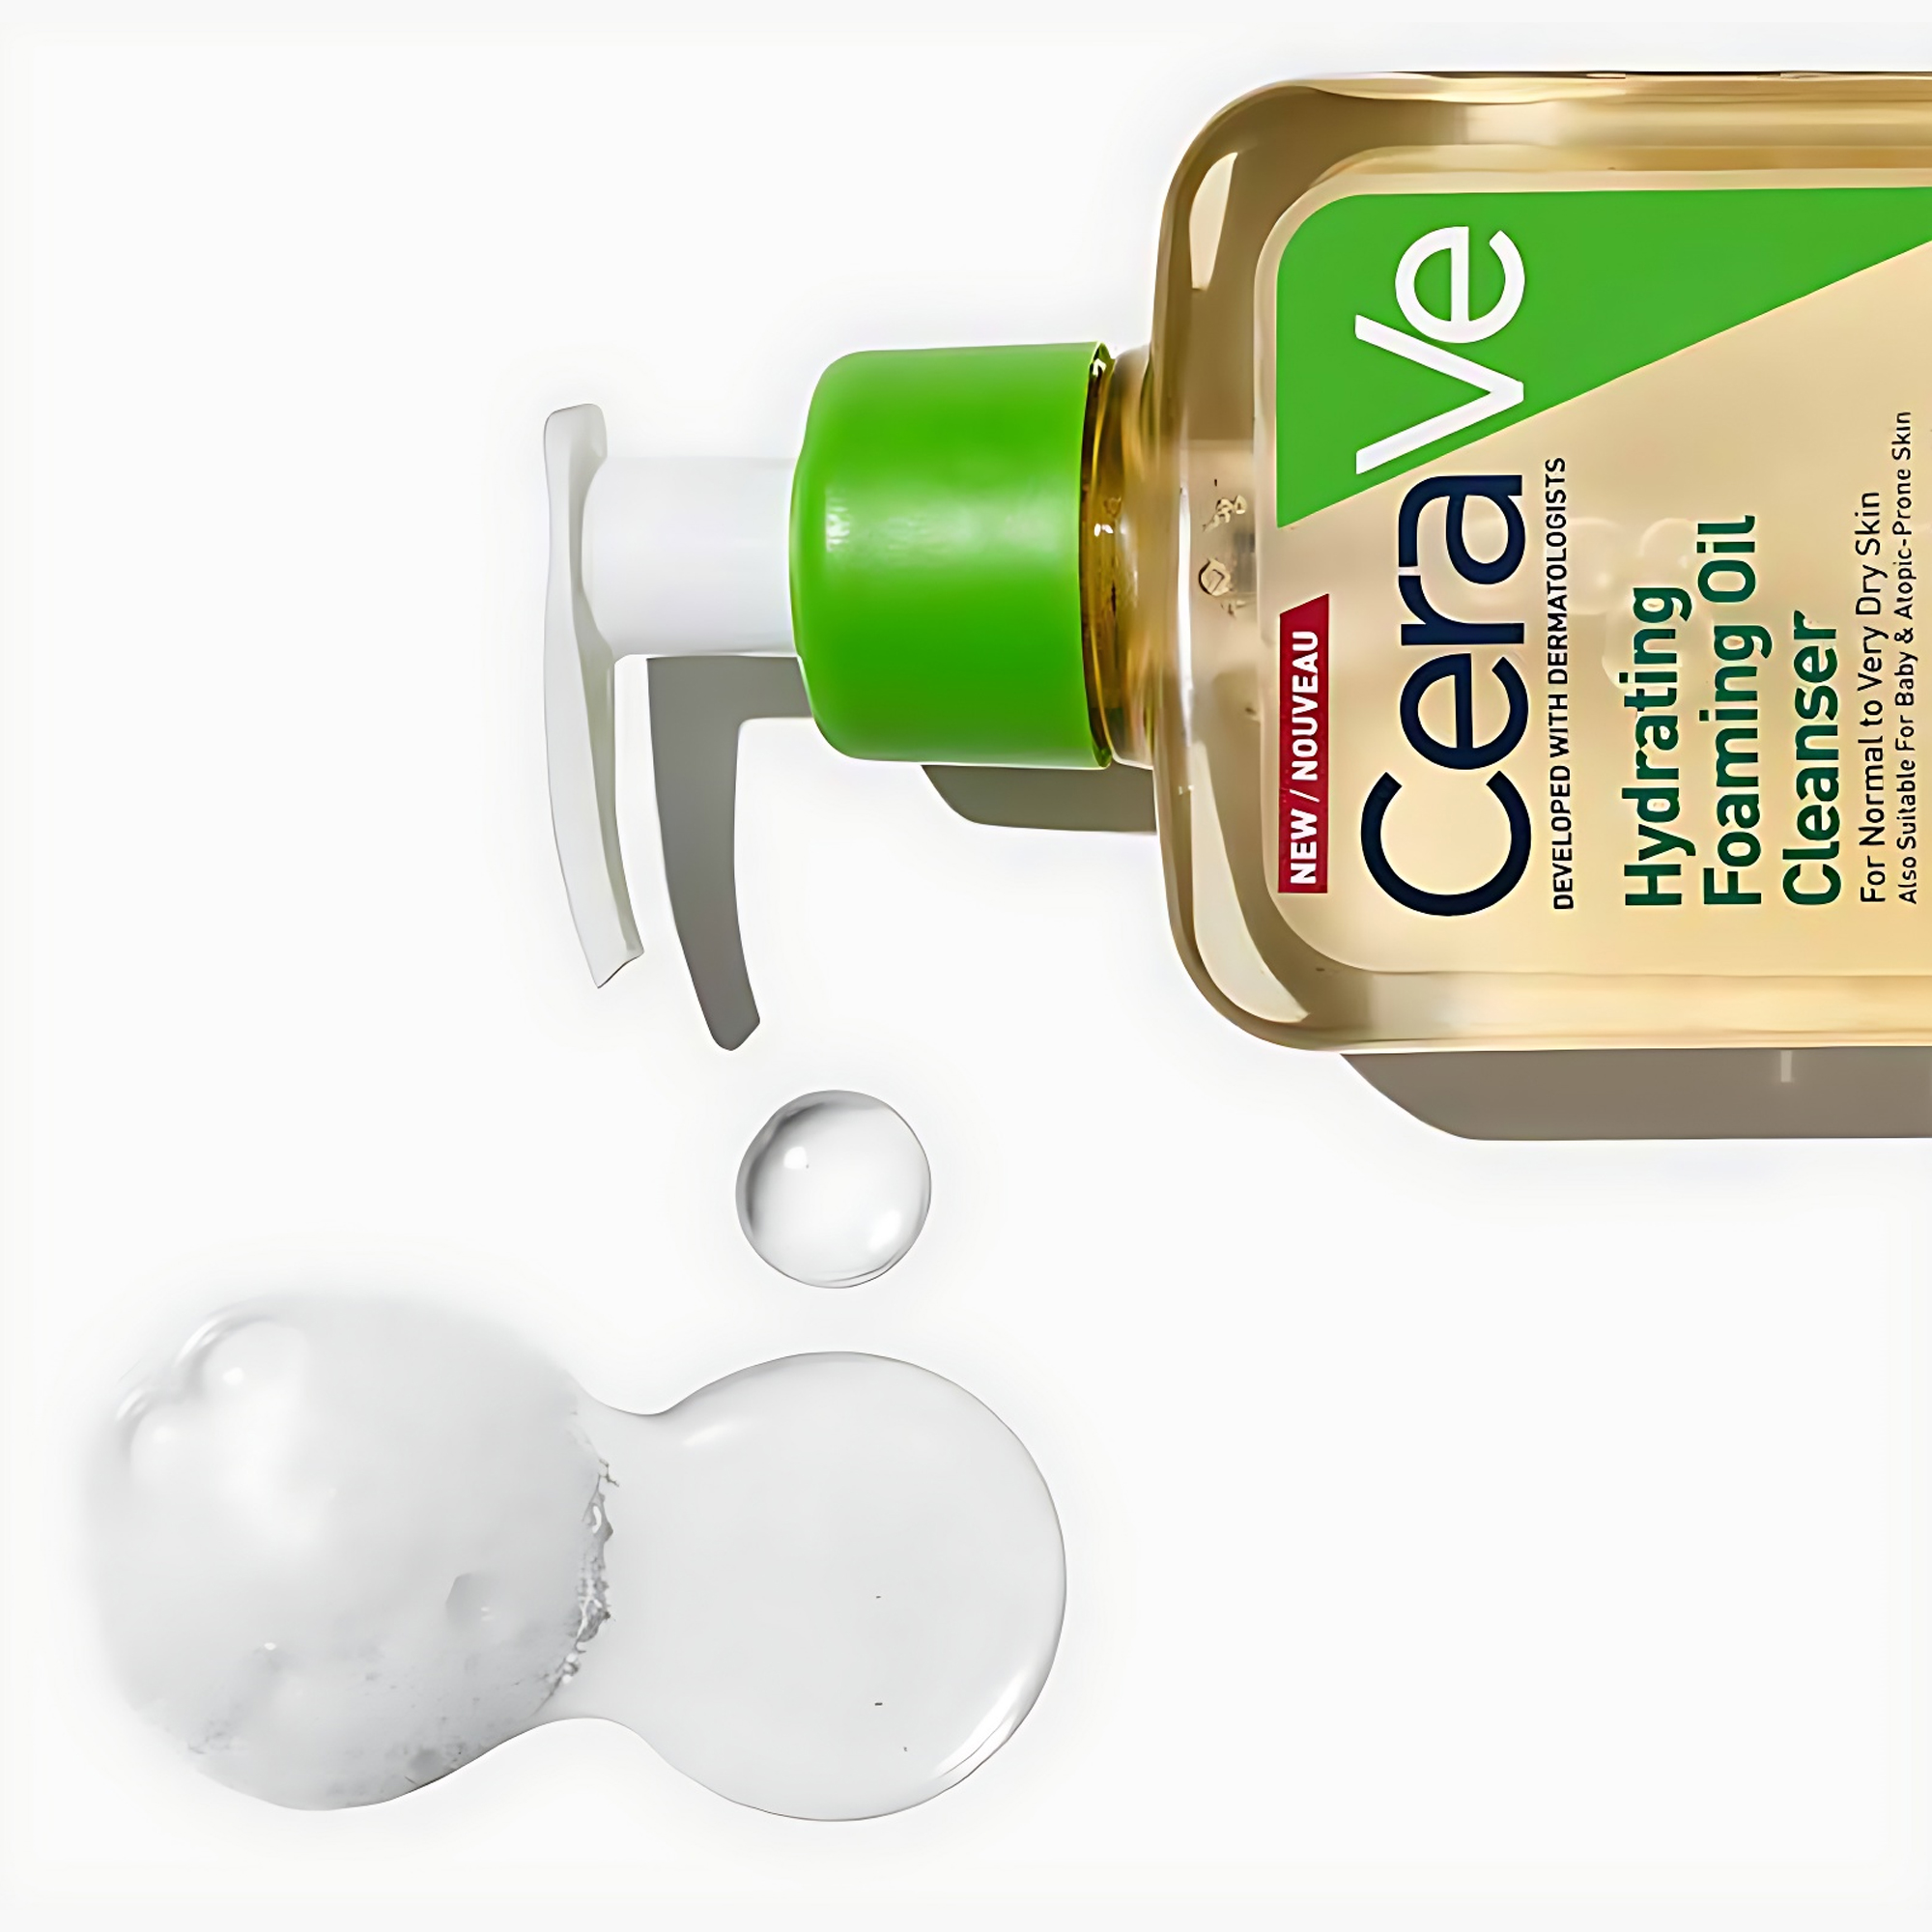 CeraVe – Hydrating Foaming oil cleanser. Limpiador facial en aceite, piel  normal a muy seca